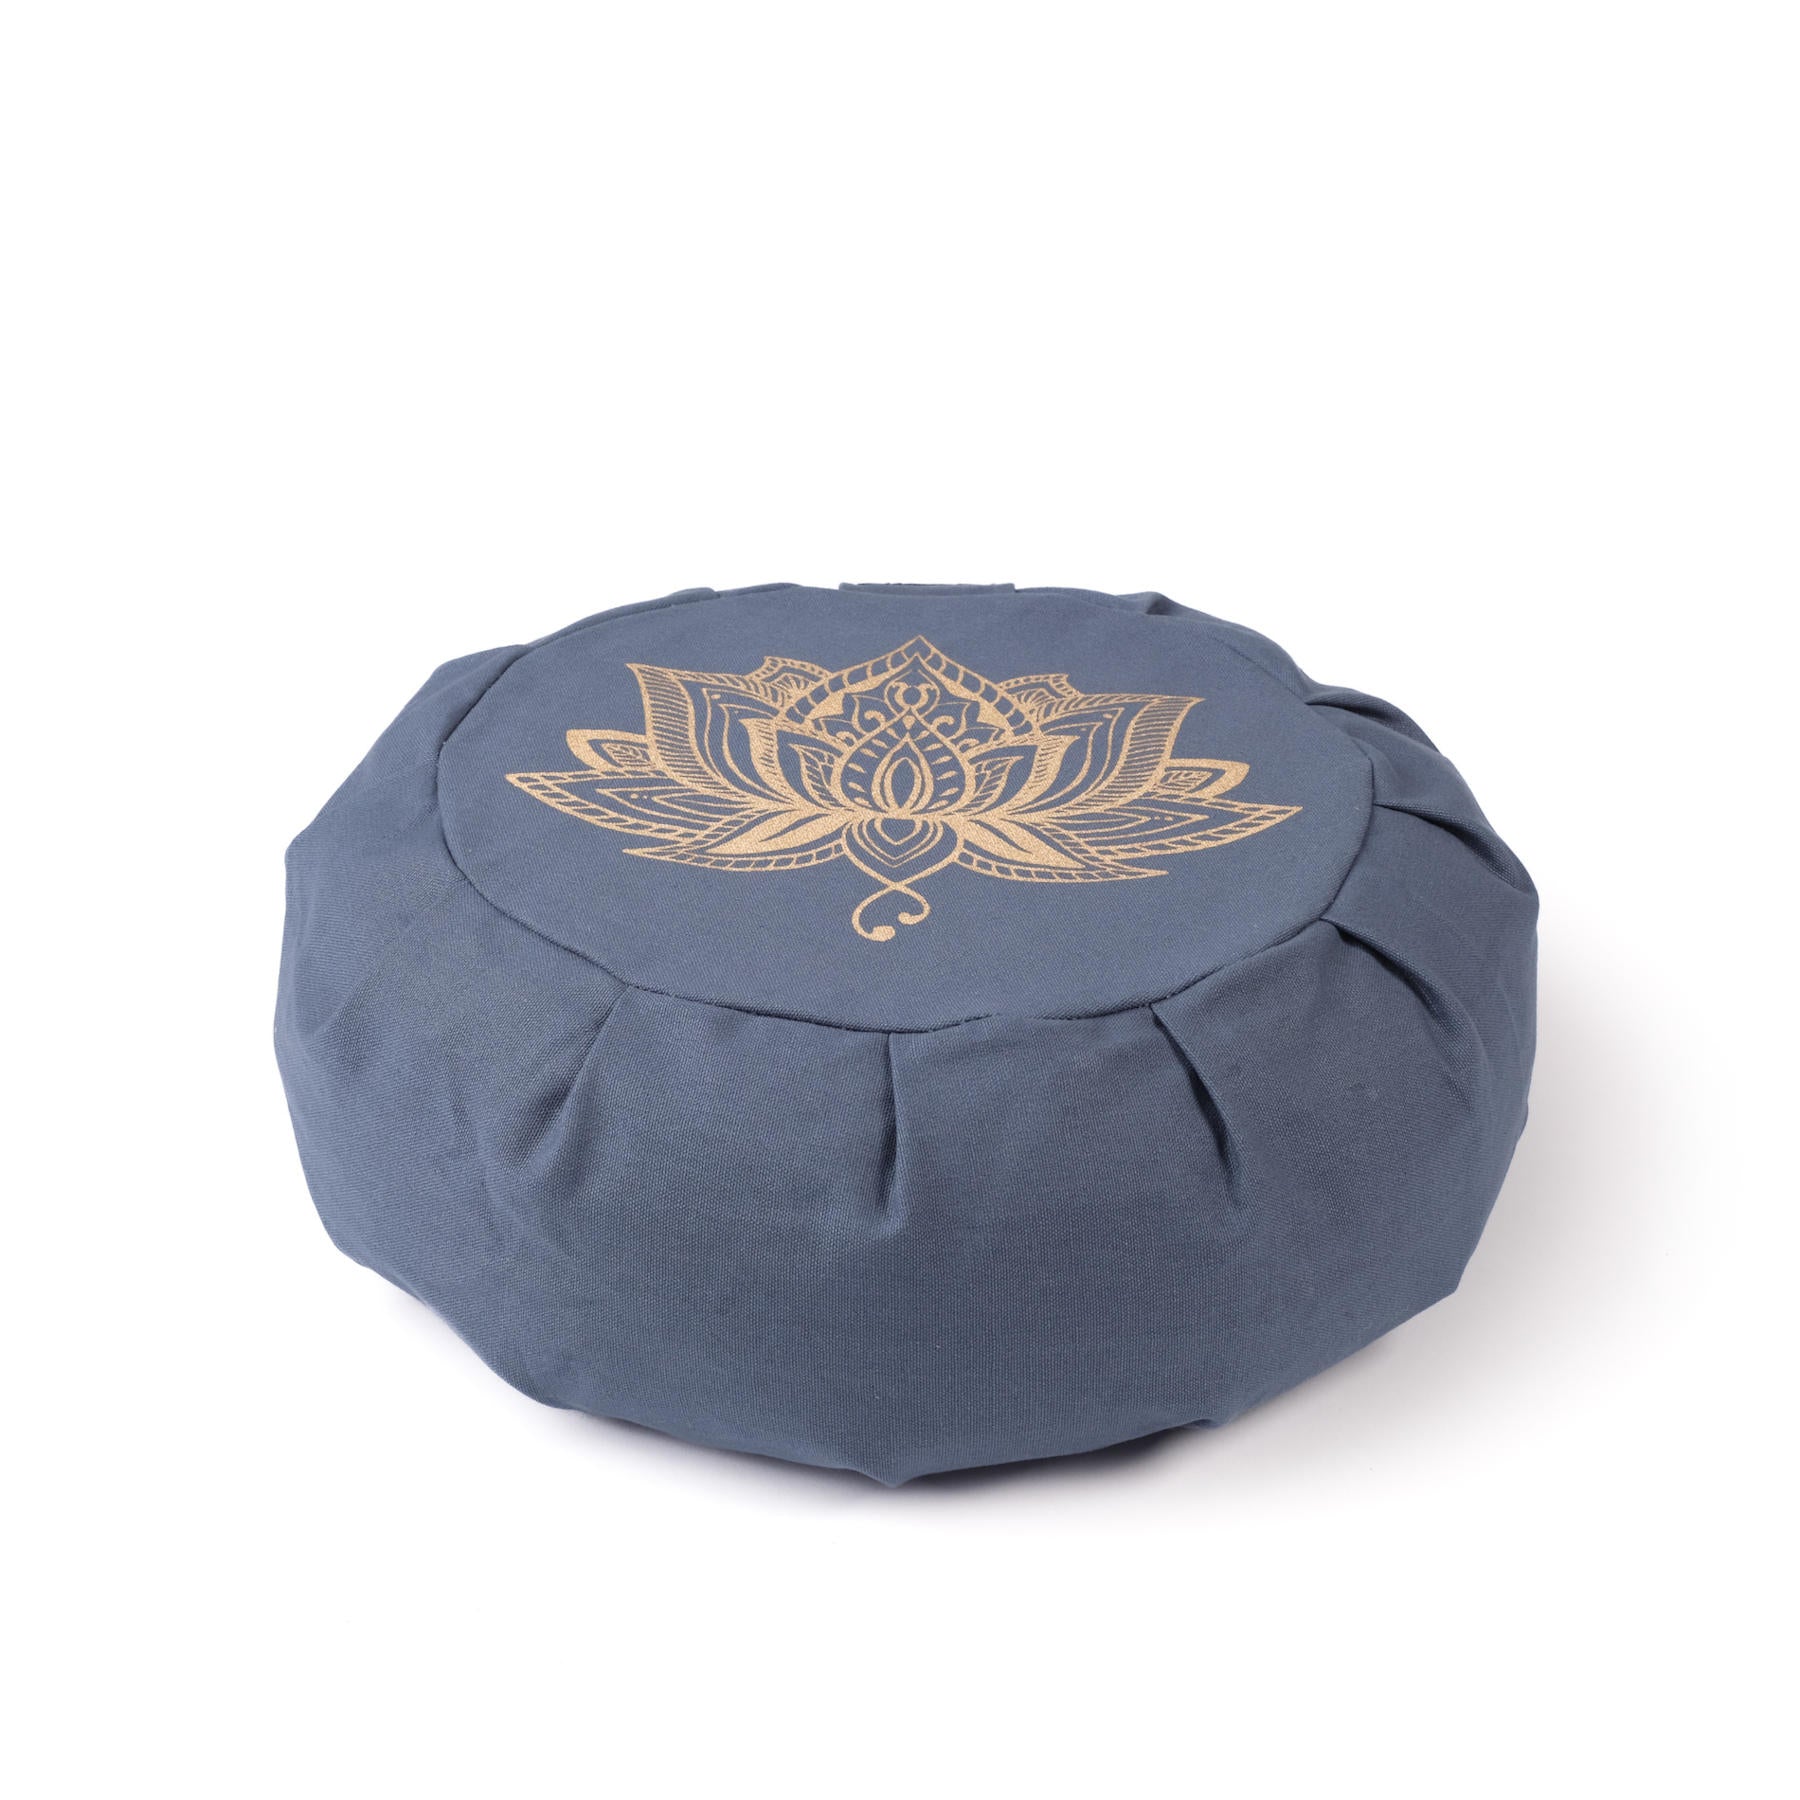 Cuscino da meditazione Zafu Lotus gold Print cotone sostenibile blue-sky